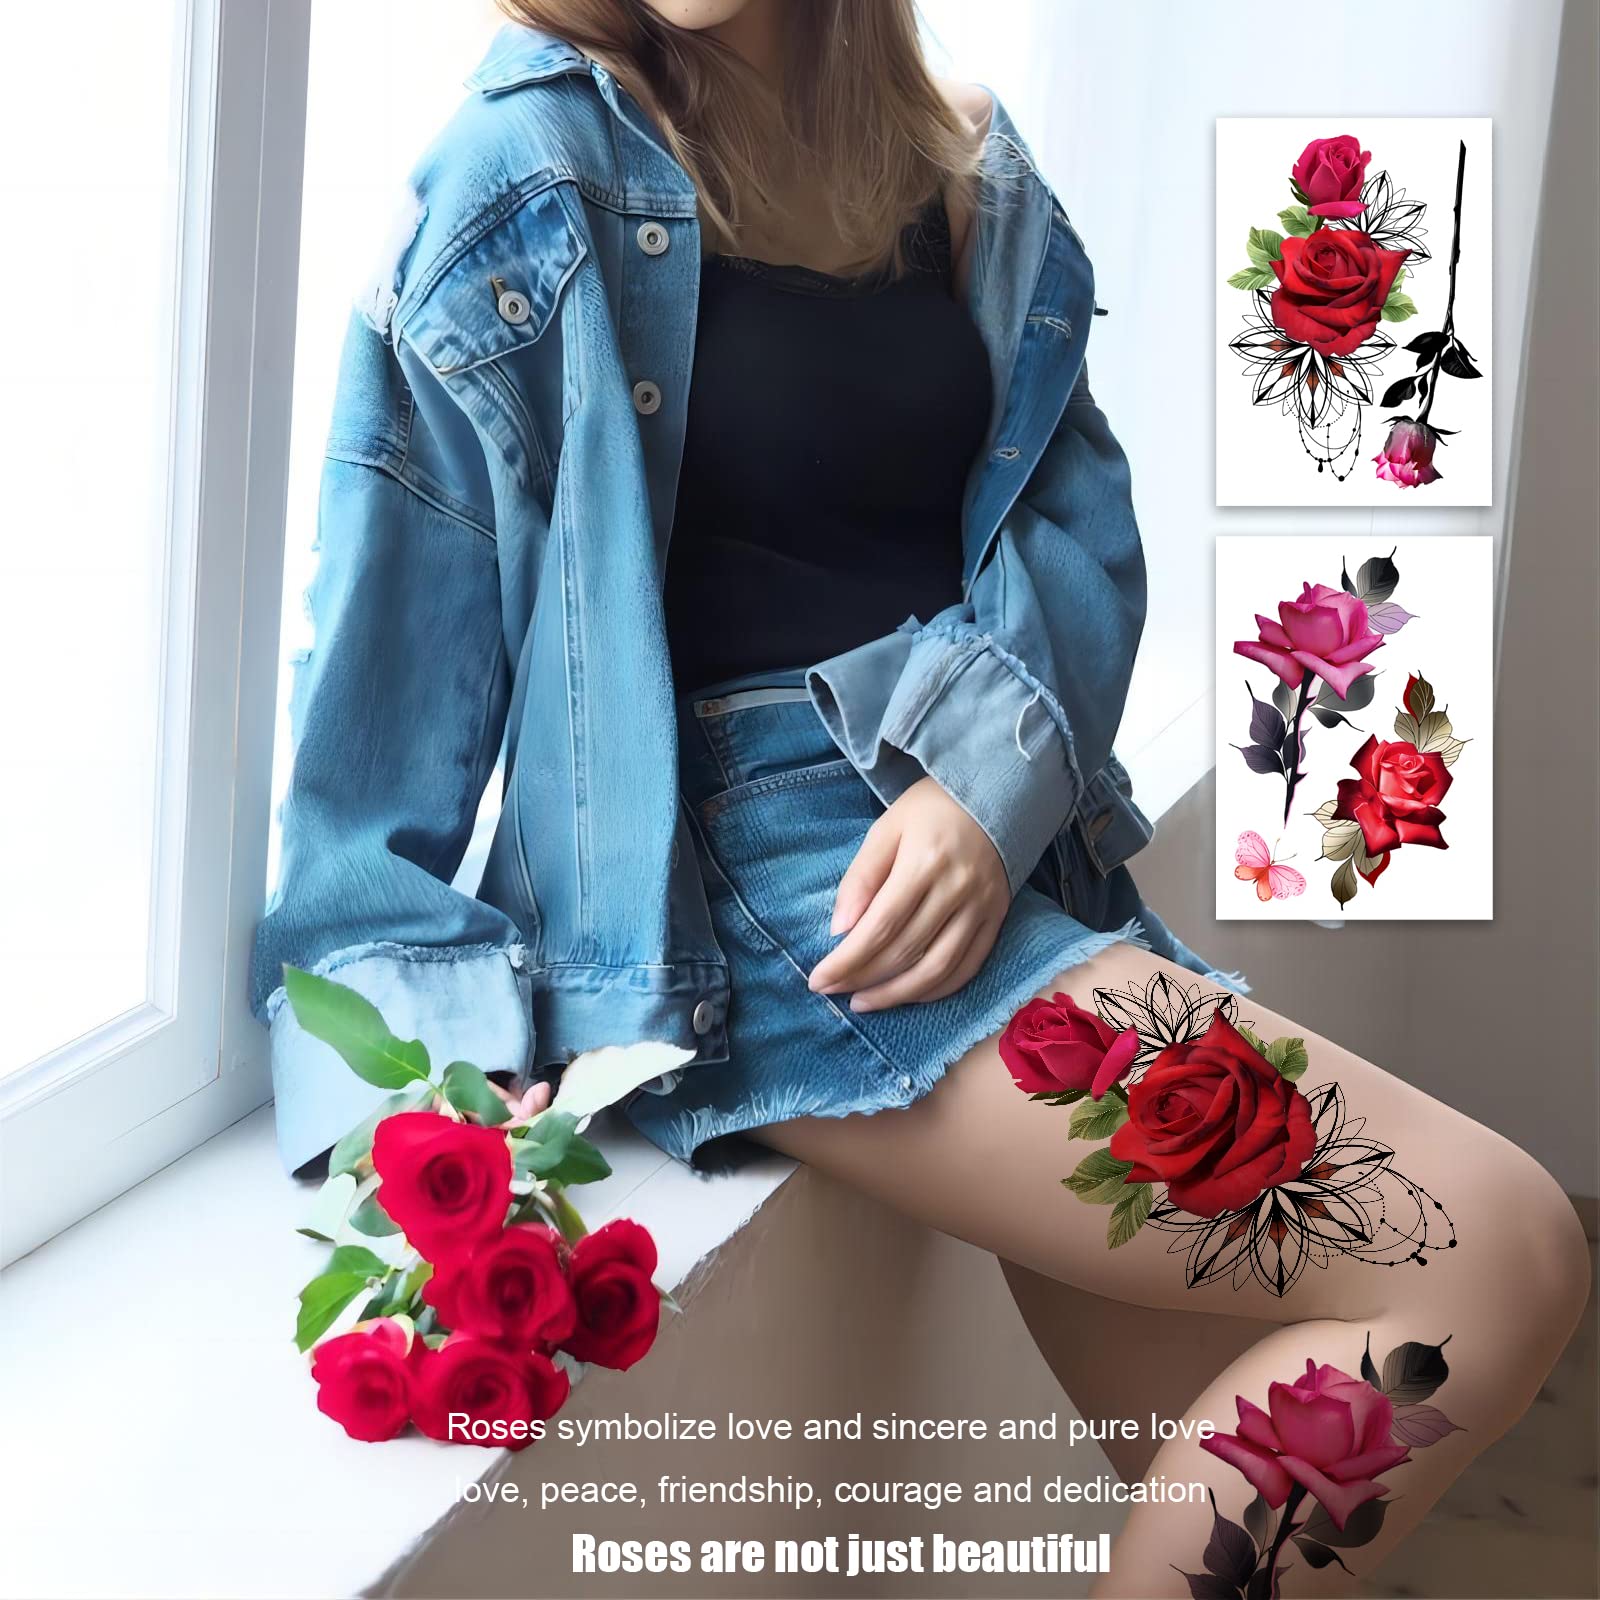 ROARHOWL Stunning rose flower temporary tattoos, large rose fake tattoos for women,rose tattoo set (Rose 1)